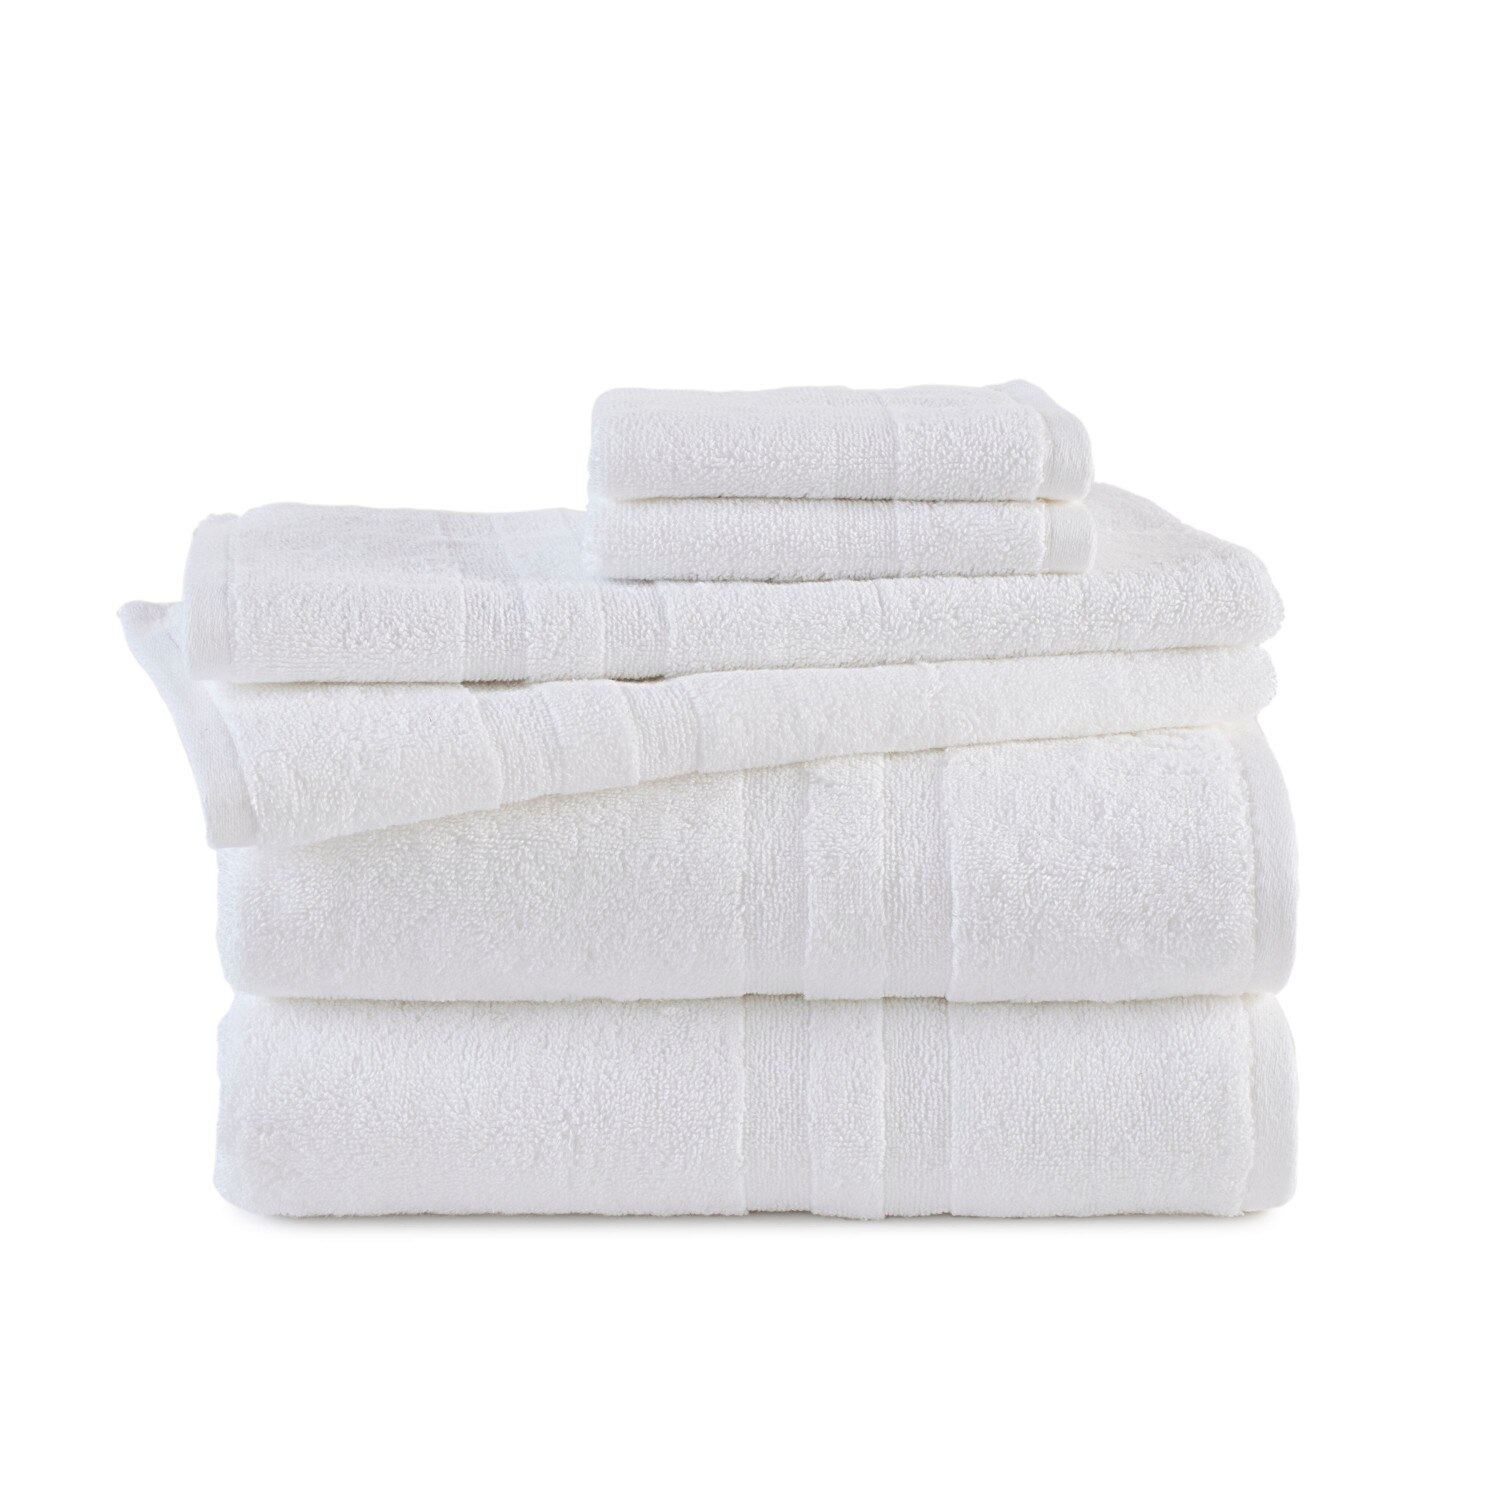 Martex Purity Solid 6-Piece Towel Set